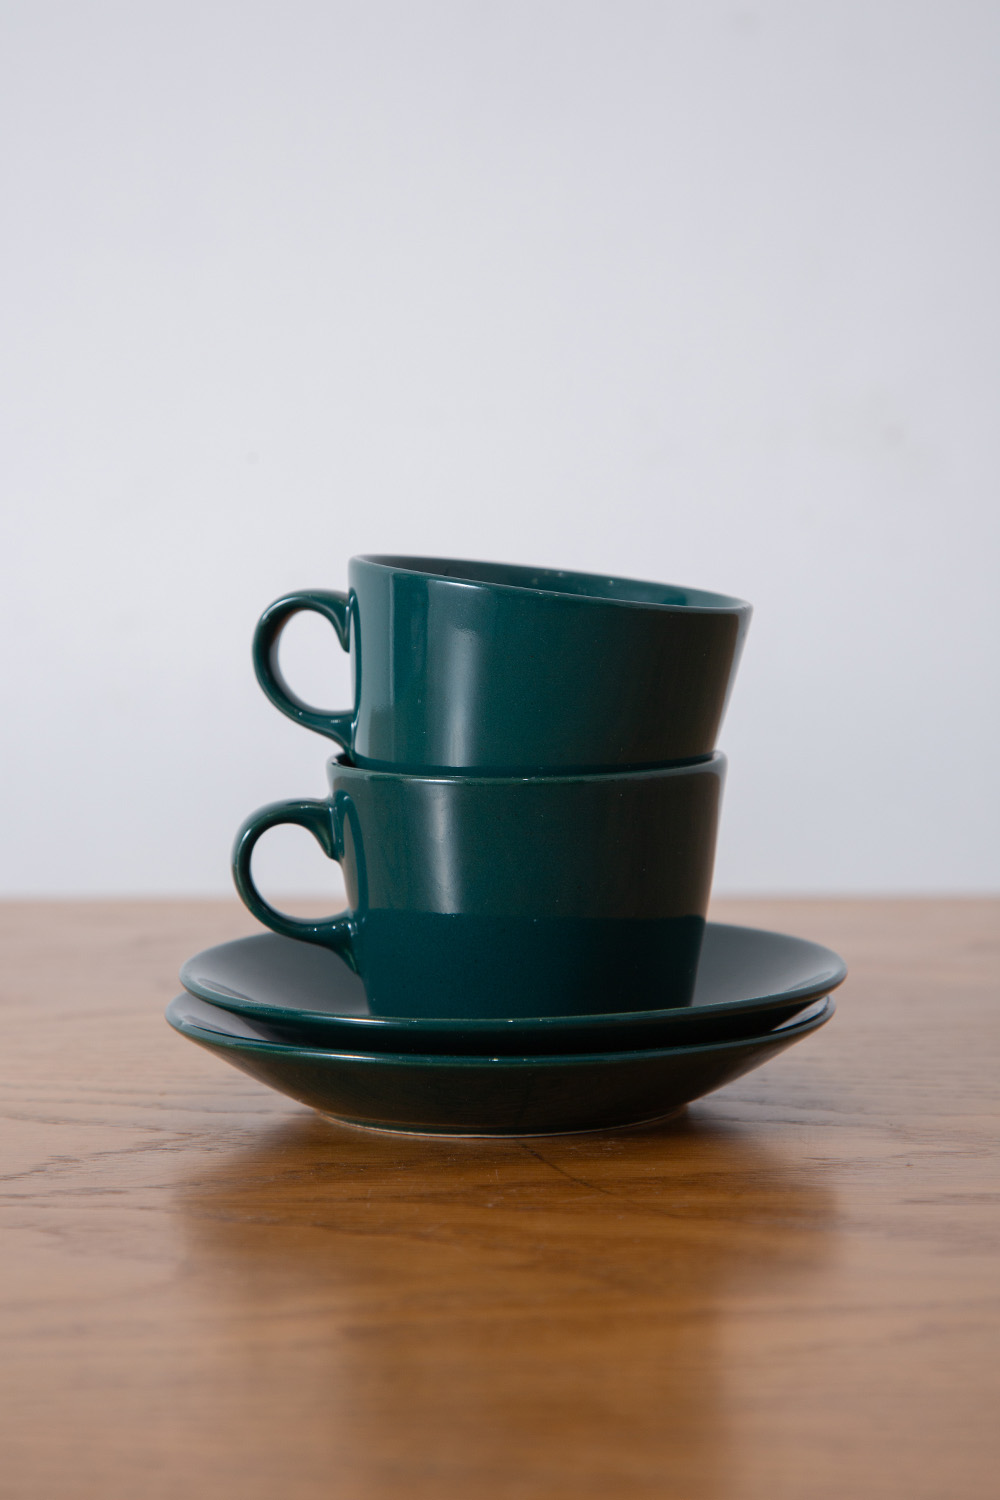 stoop | Cup&Saucer “KILTA” for ARABIA by Kaj Franck in Green